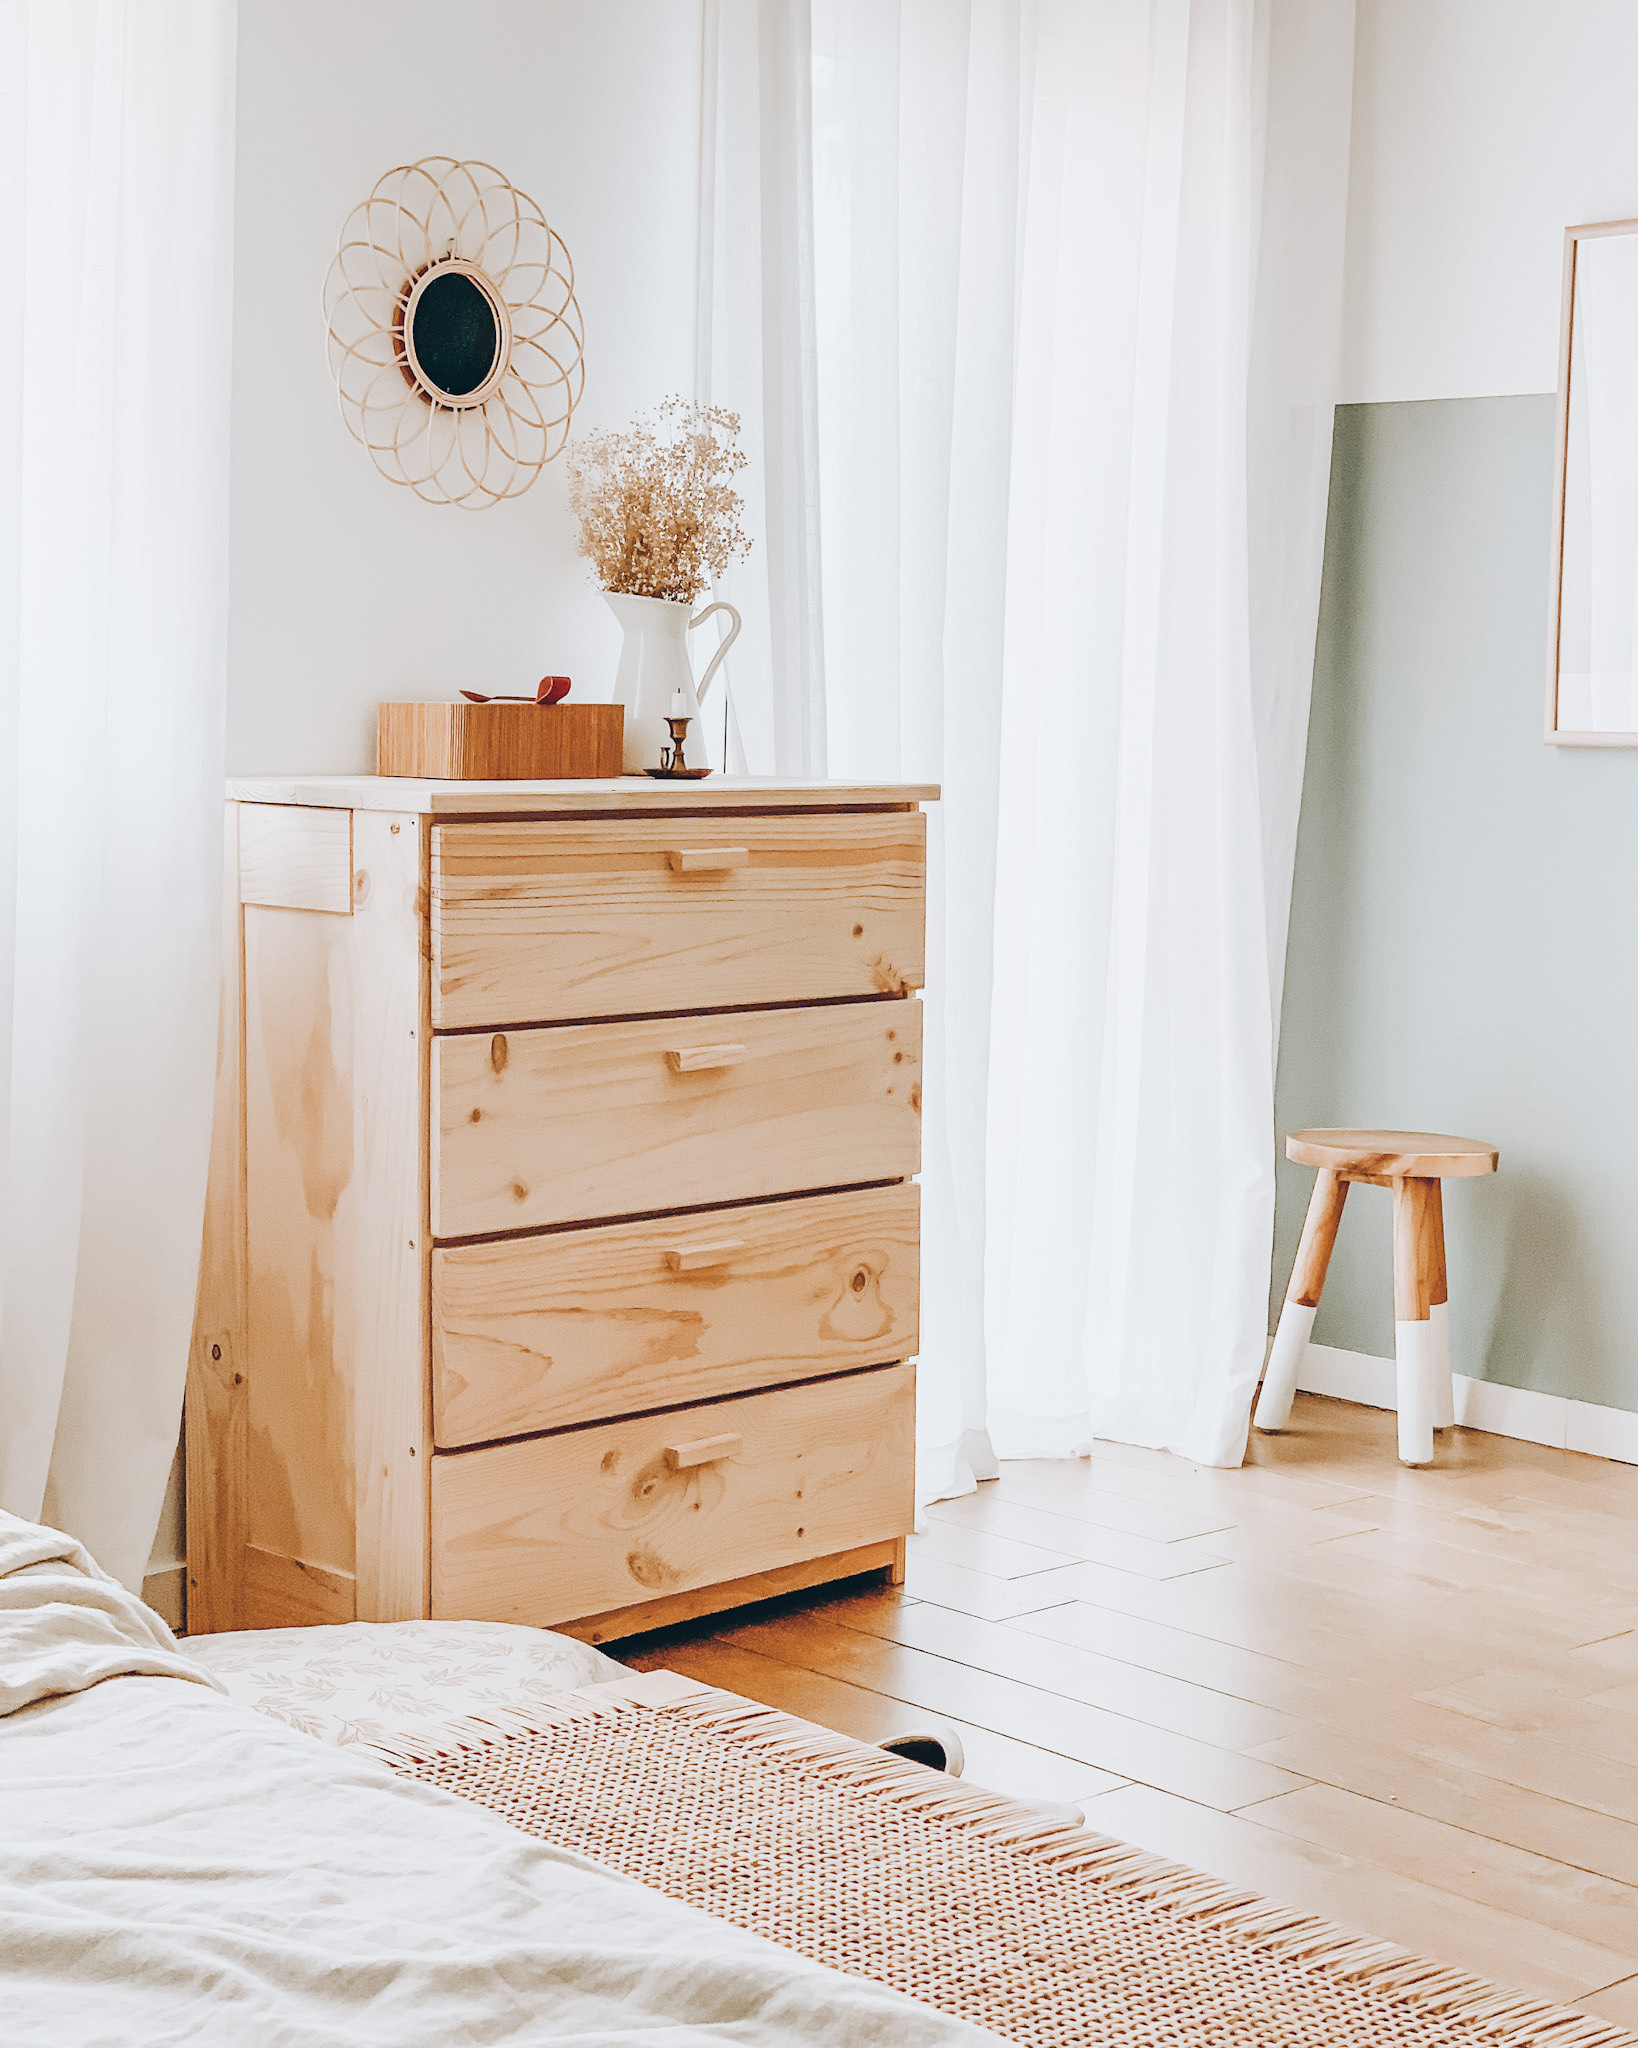 Cómo decorar las paredes de tu hogar con madera de verdad - Muebles LUFE